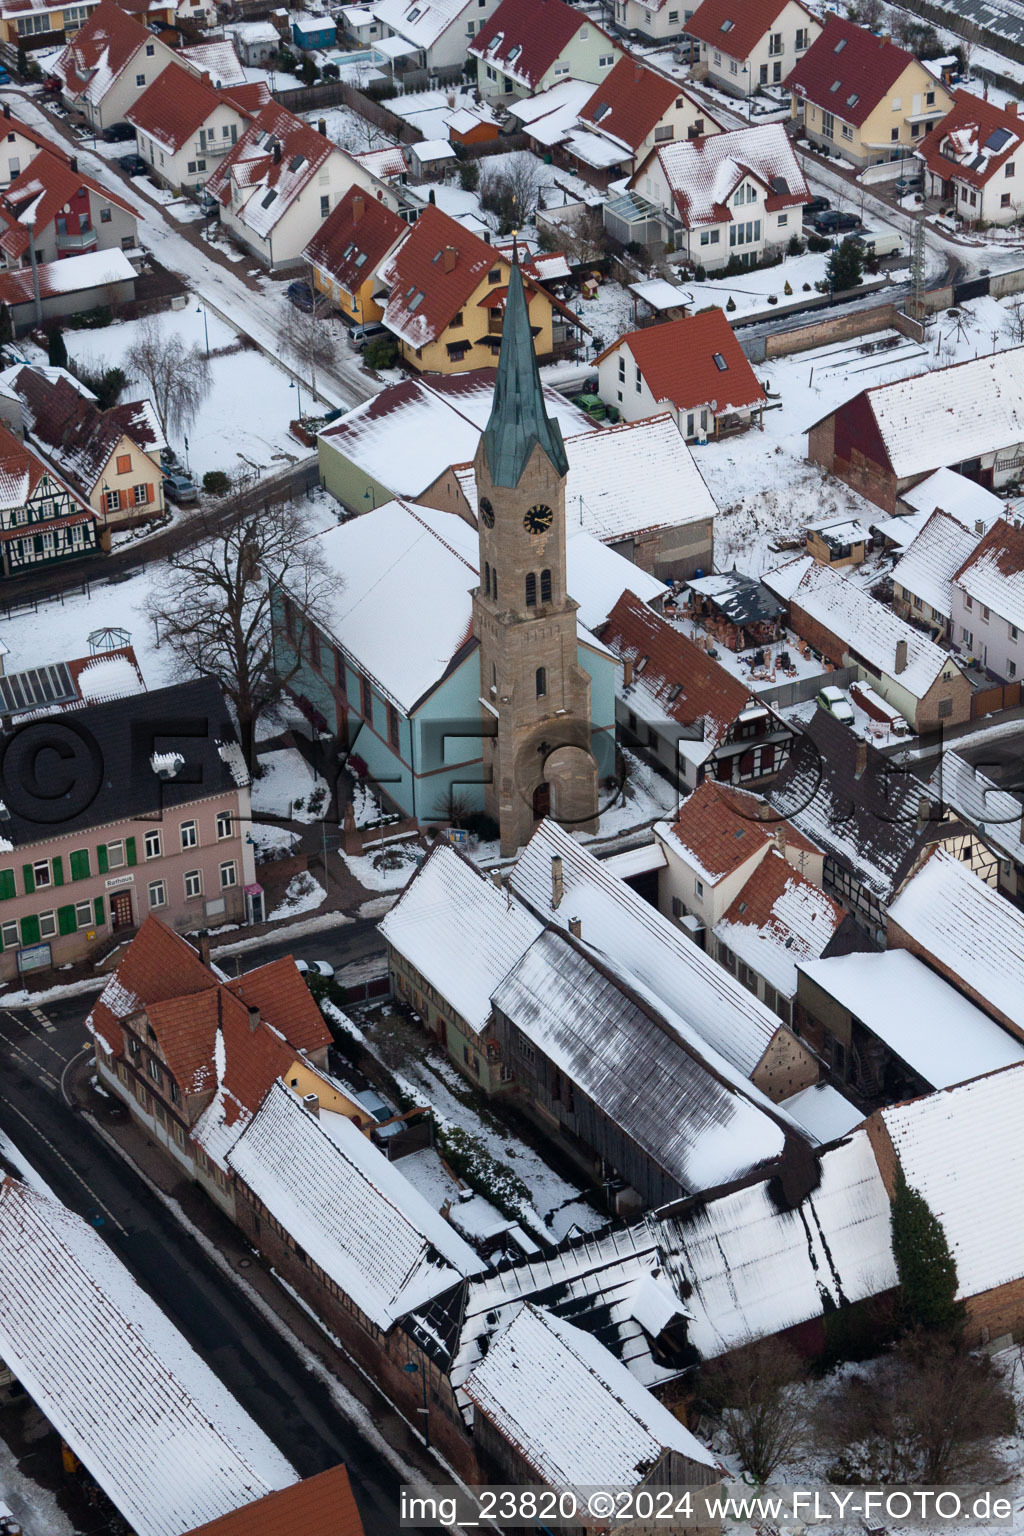 Luftbild von Evang. Kirche, Rathaus in Erlenbach bei Kandel im Bundesland Rheinland-Pfalz, Deutschland